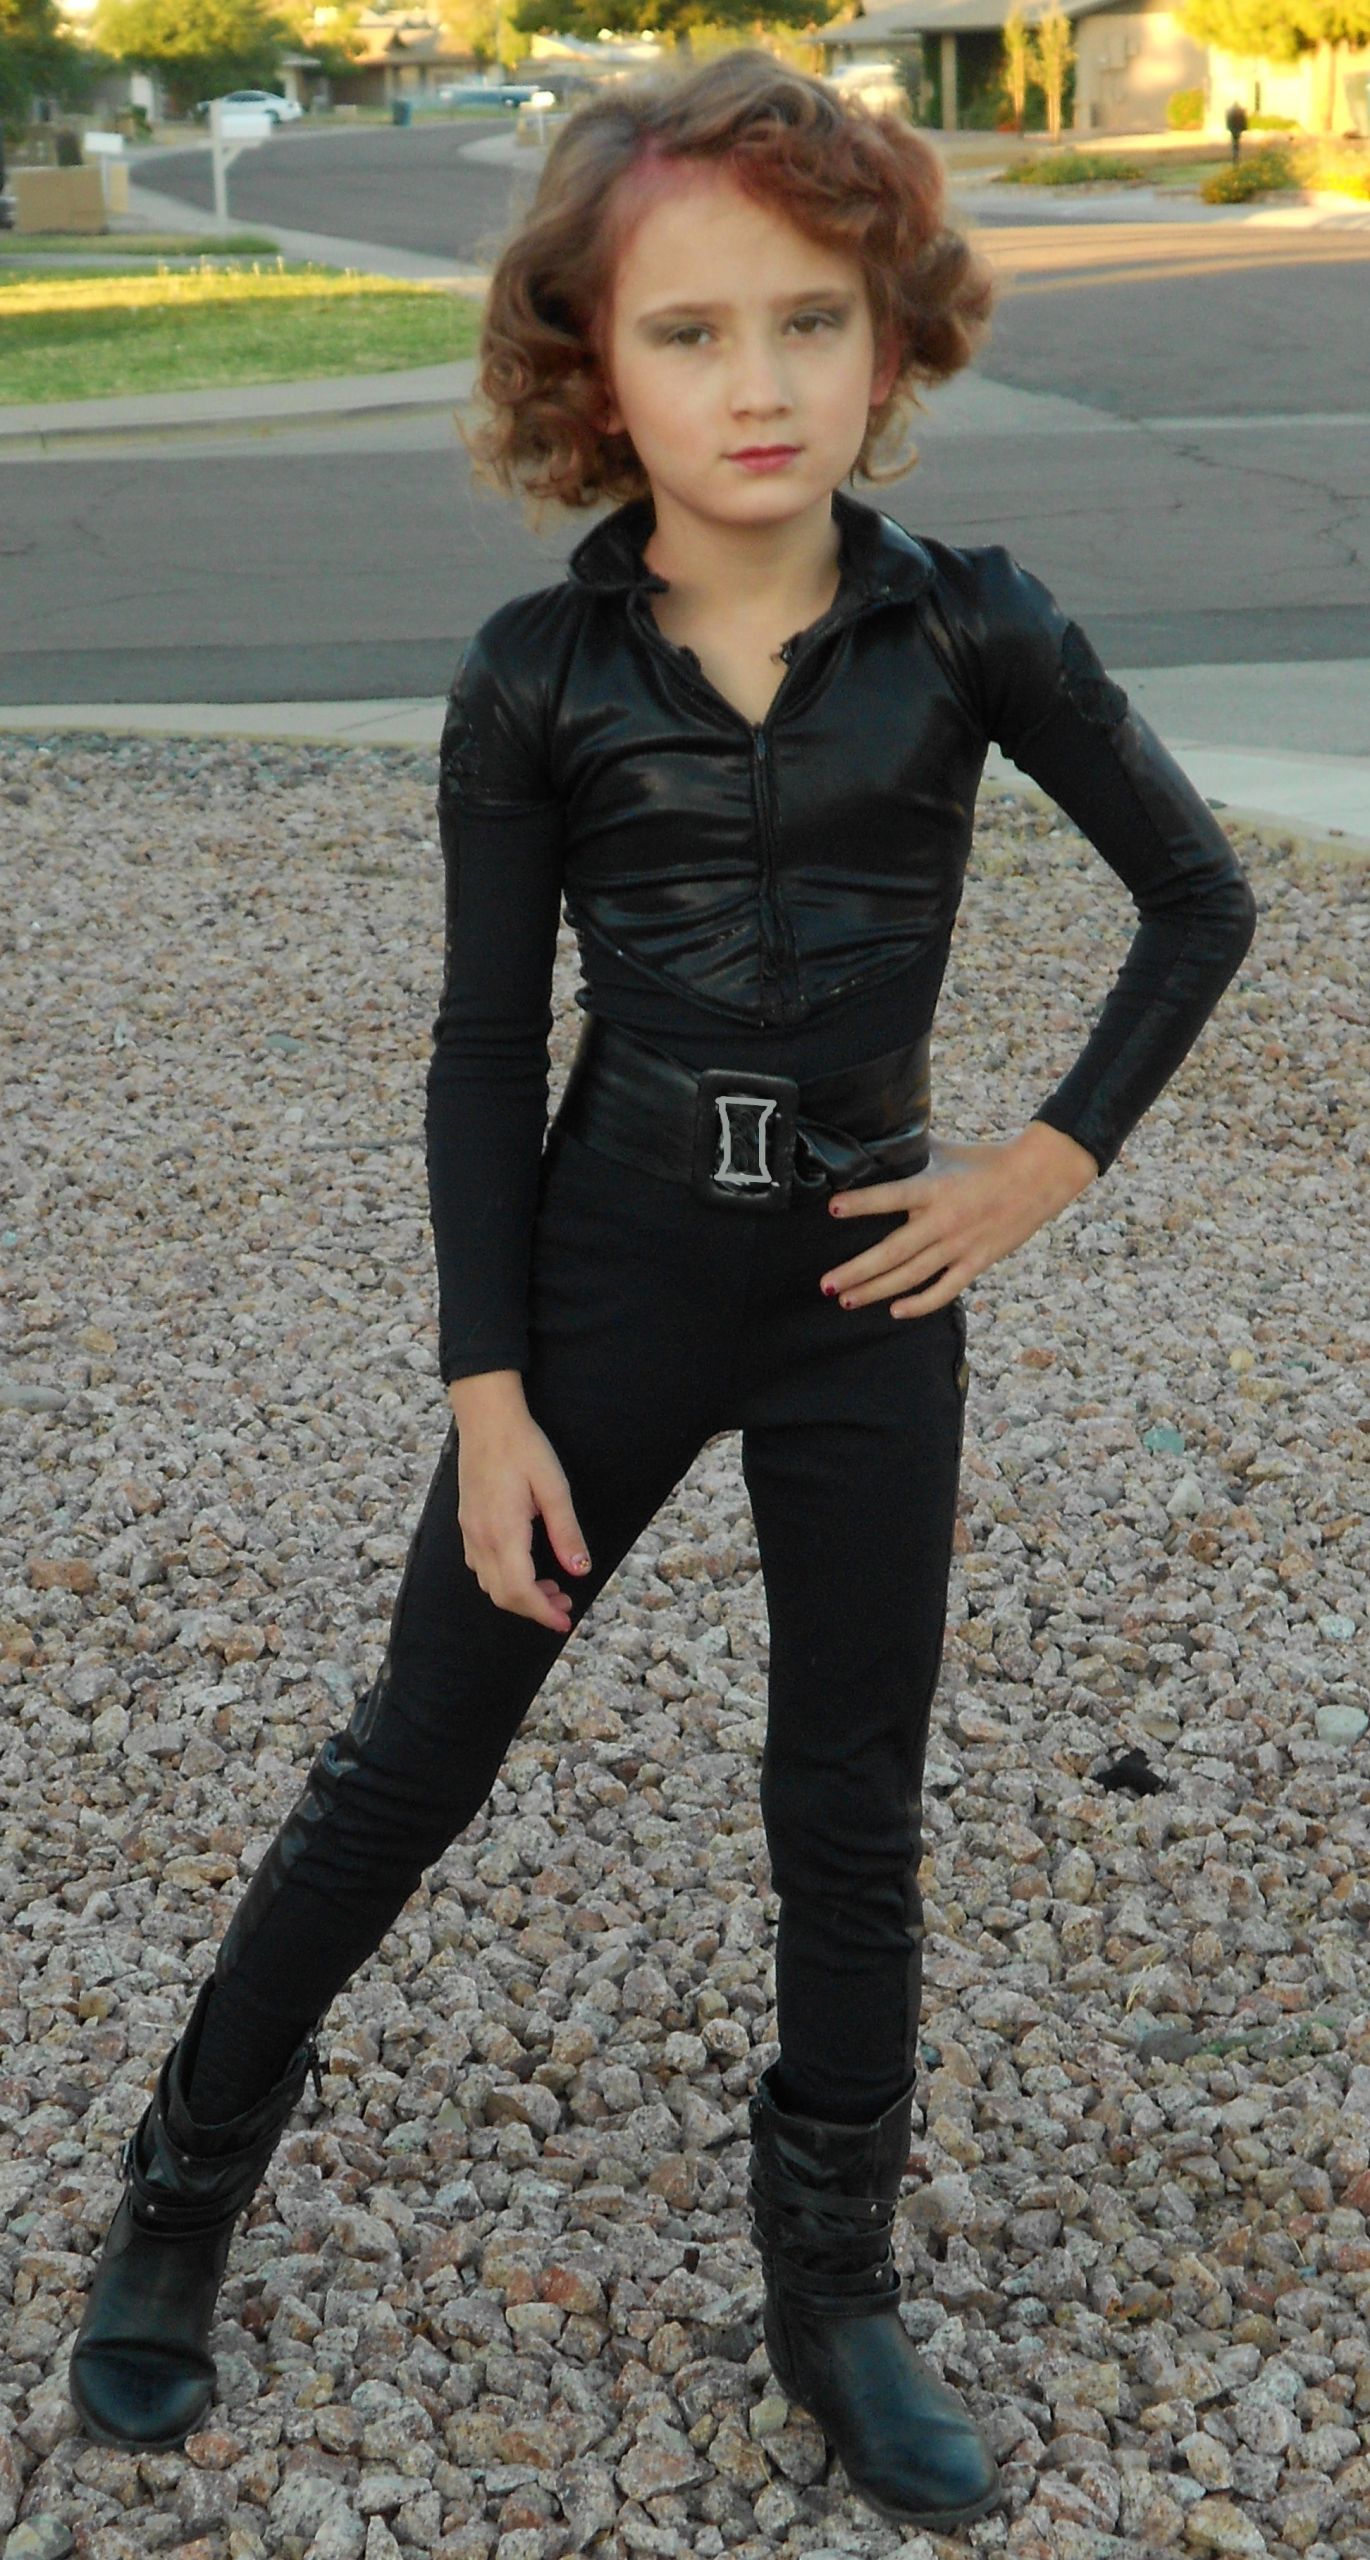 Black Widow Costume DIY
 Black Widow – Costumes by Jen